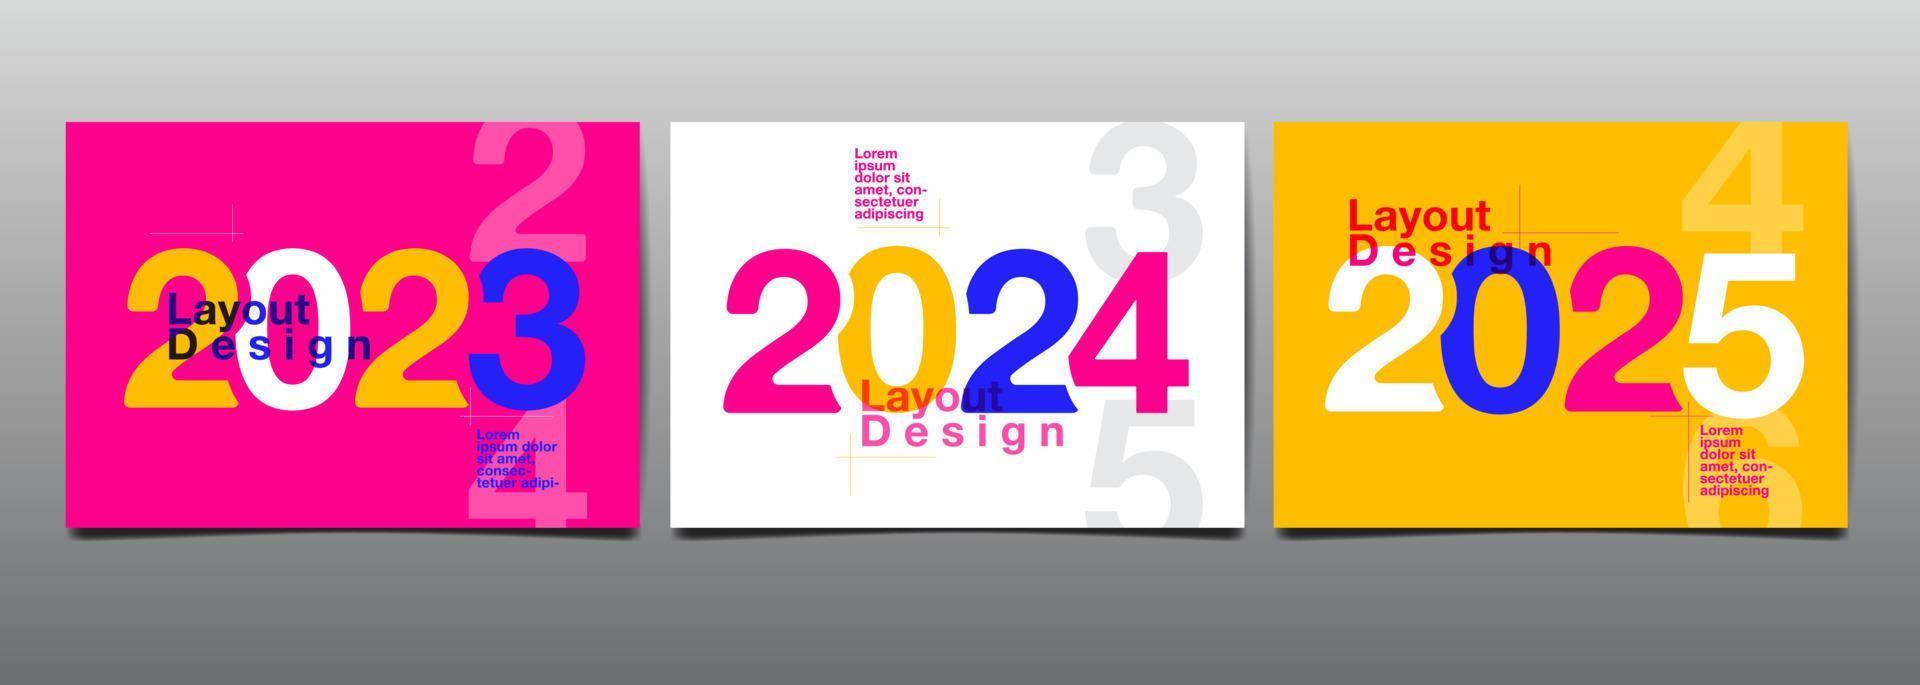 design de layout de modelo 2023, 2024, 2025, tipografia, livro de capa. apresentação abstrata design plano vetor